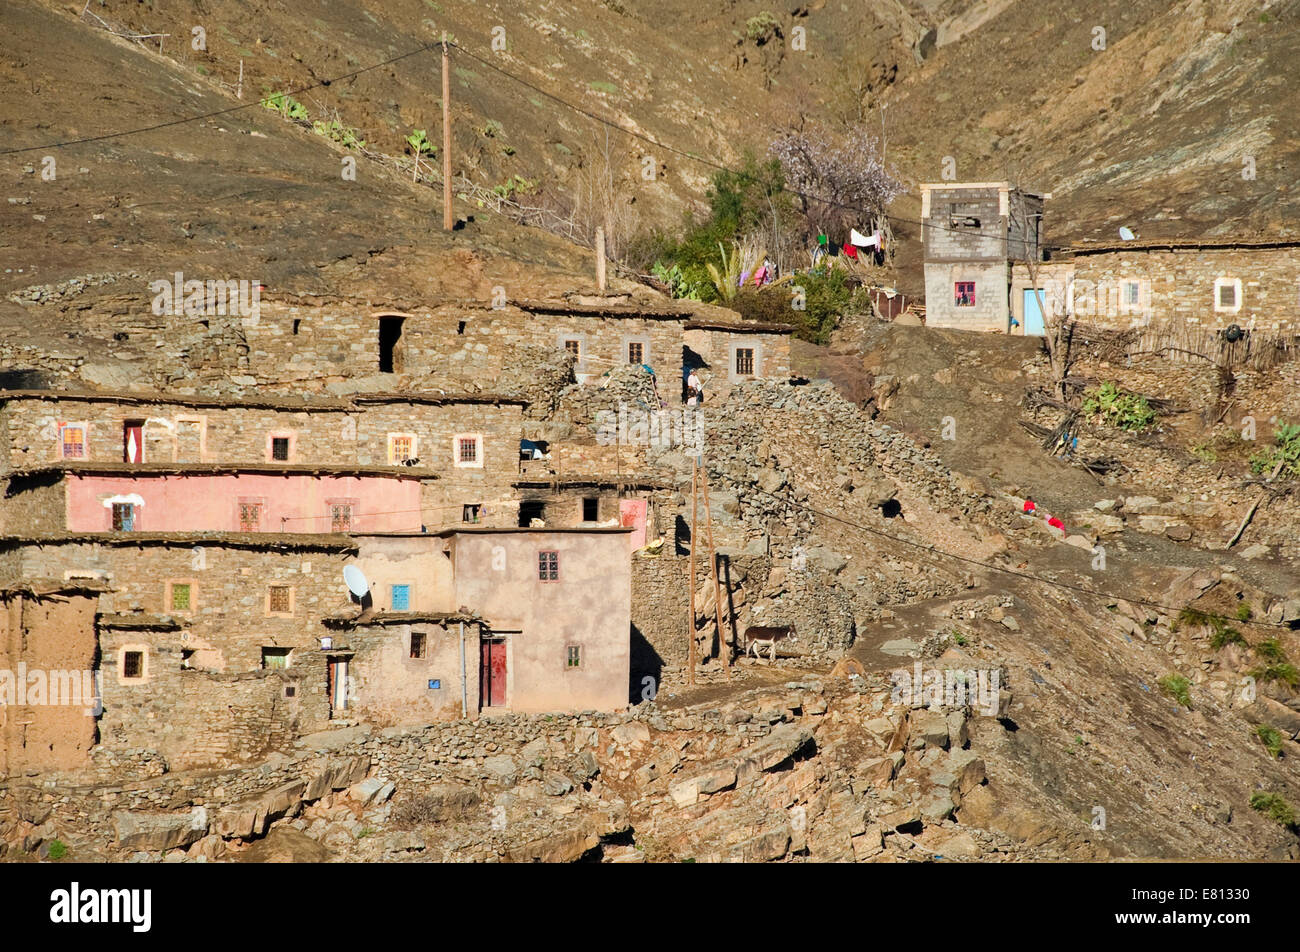 Vista horizontal de un pequeño pueblo enclavado mudbrick en la alta cordillera del Atlas en Marruecos. Foto de stock